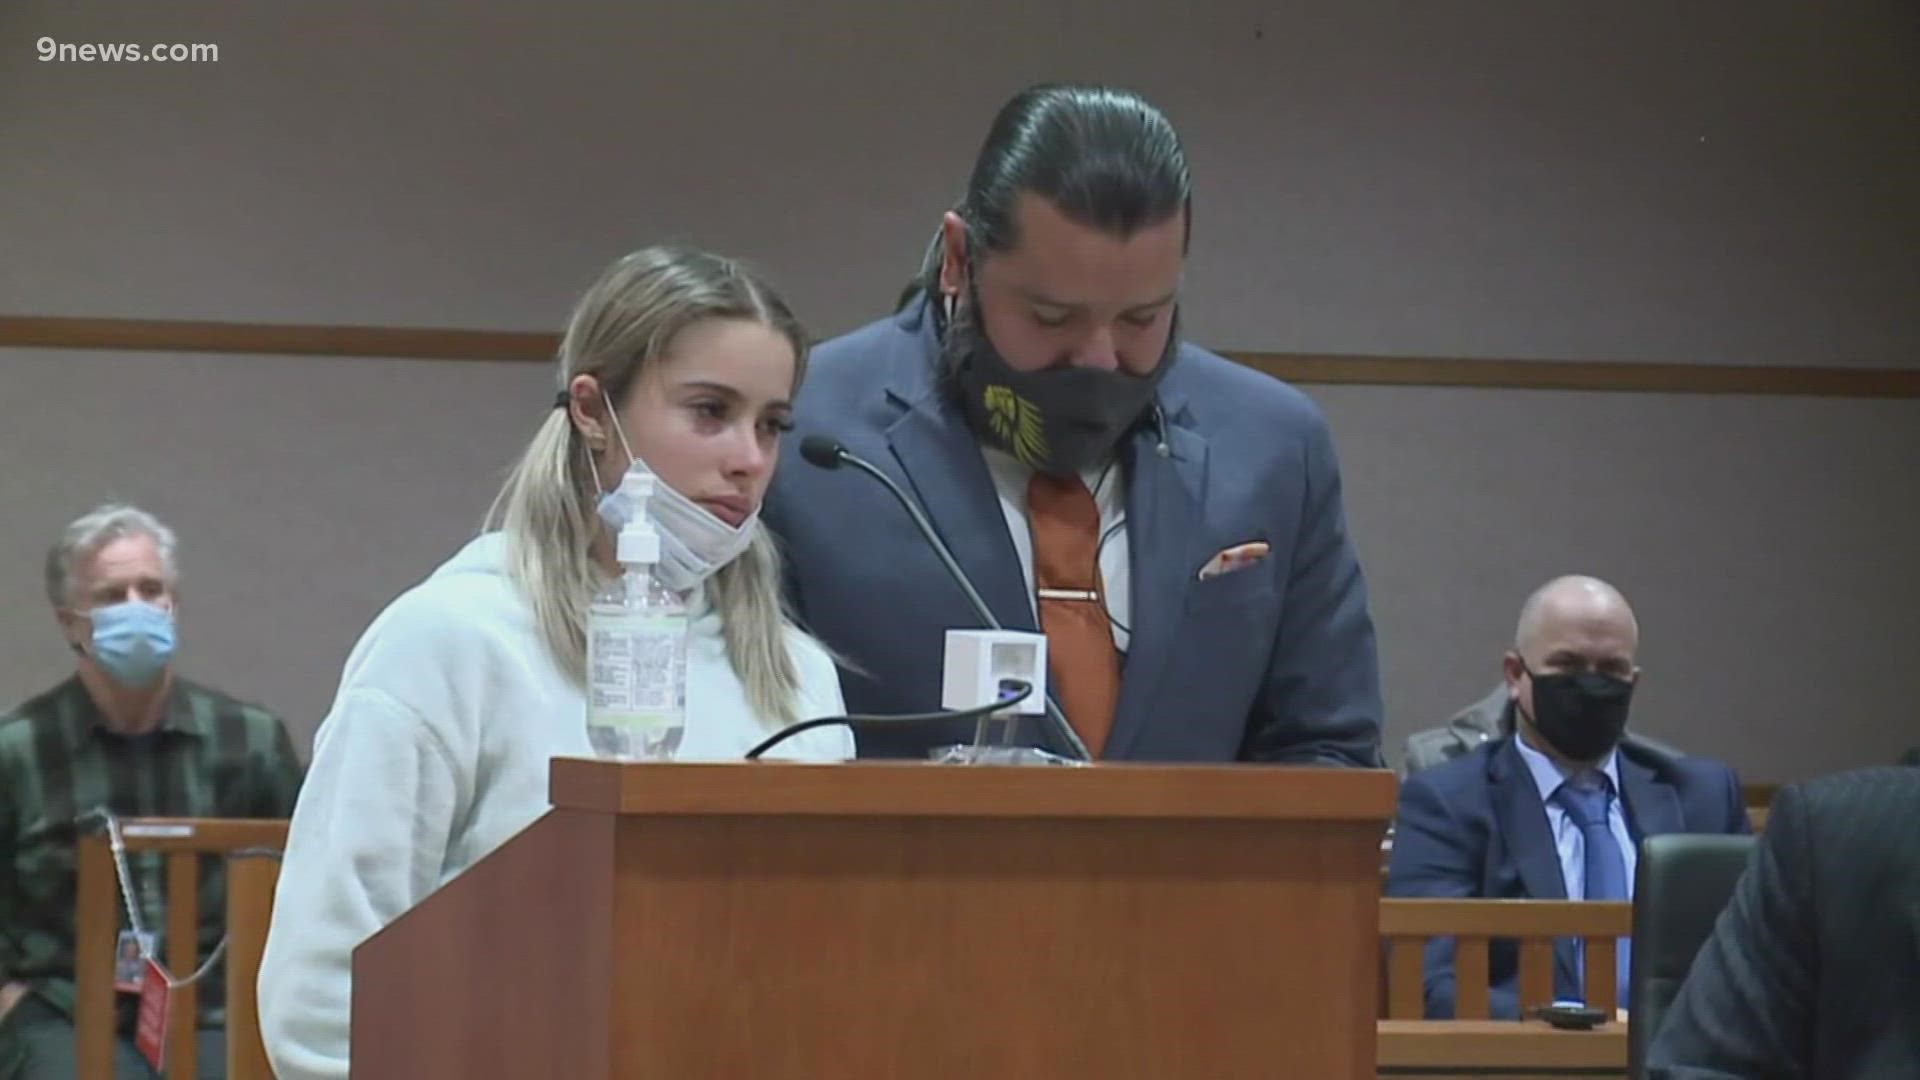 La esposa de Rogel Aguilera-Mederos, el conductor condenado en el accidente mortal de la I-70 que dejó a cuatro muertos, habla durante su sentencia.